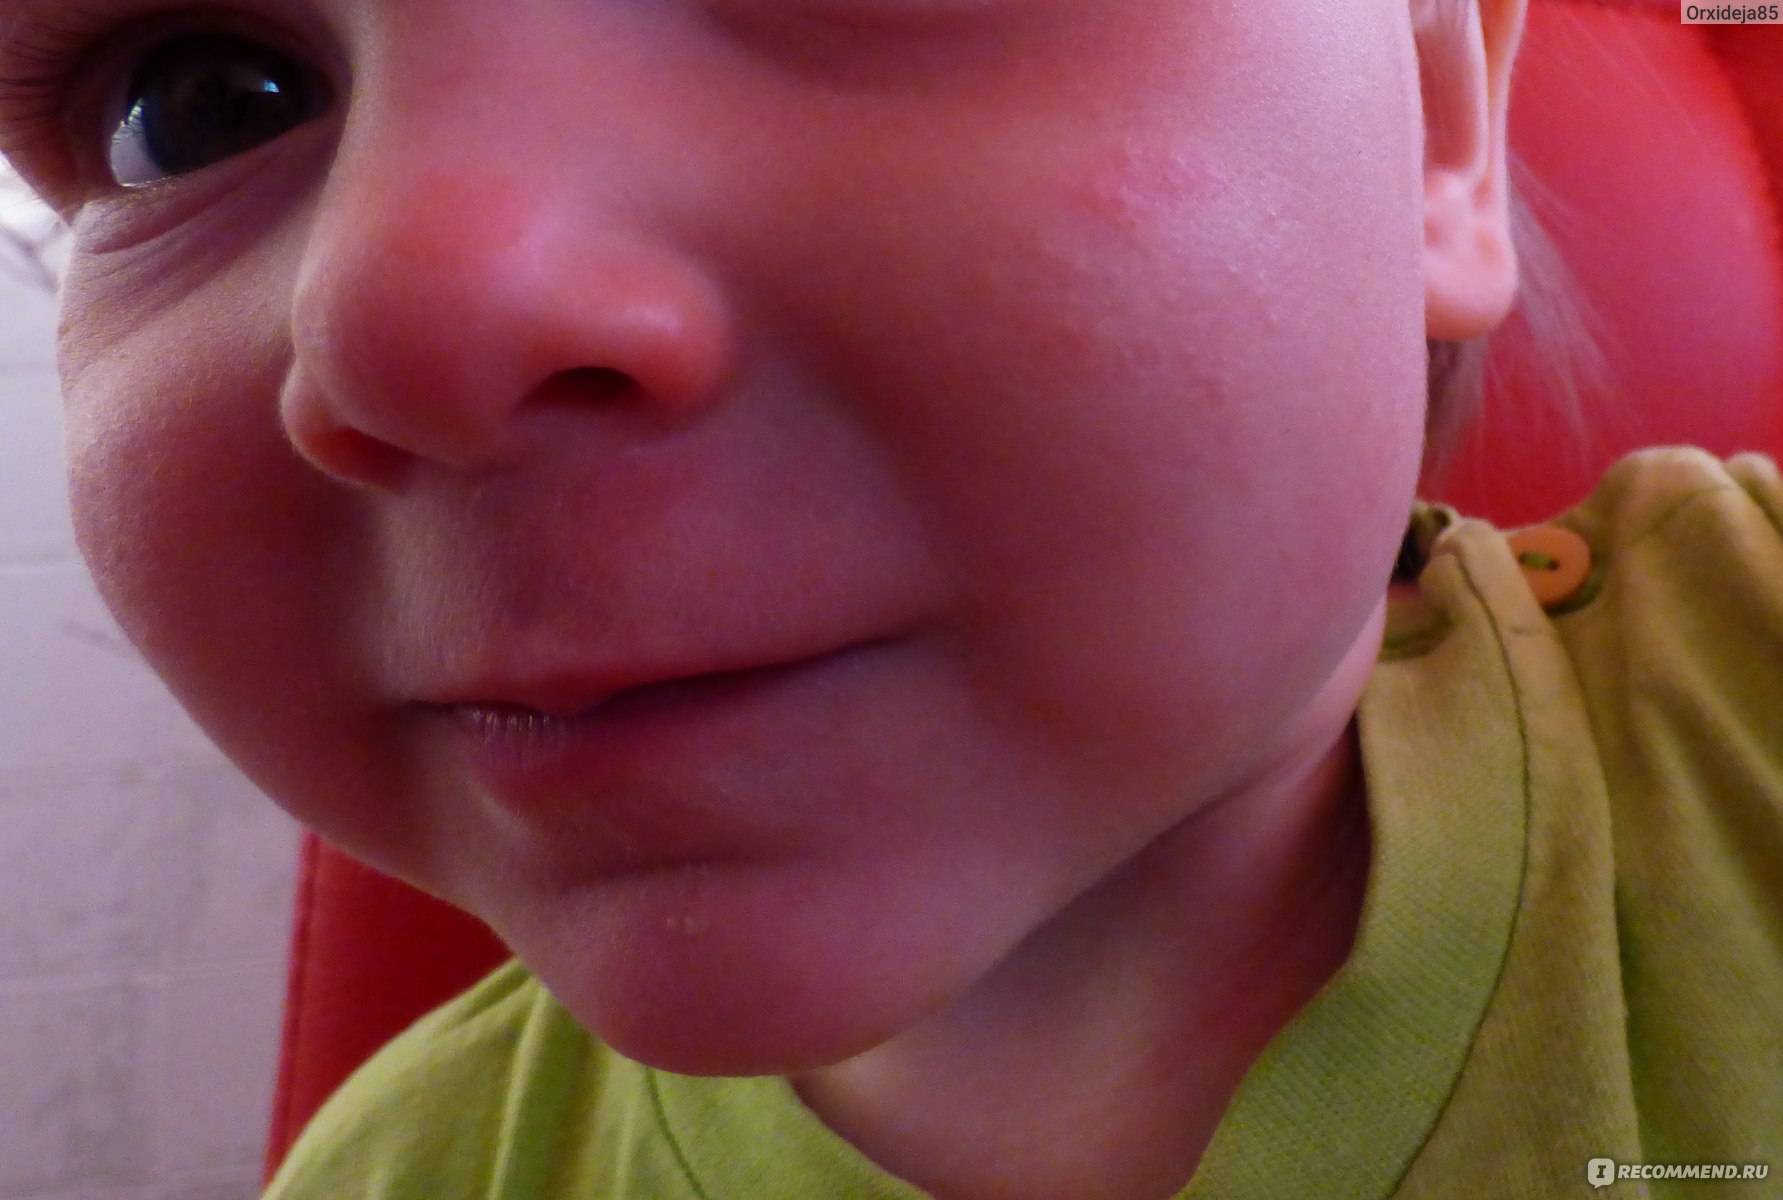 Бывает ли аллергия на хомяков? ребенок стал ужасно кашлять - я happy mama